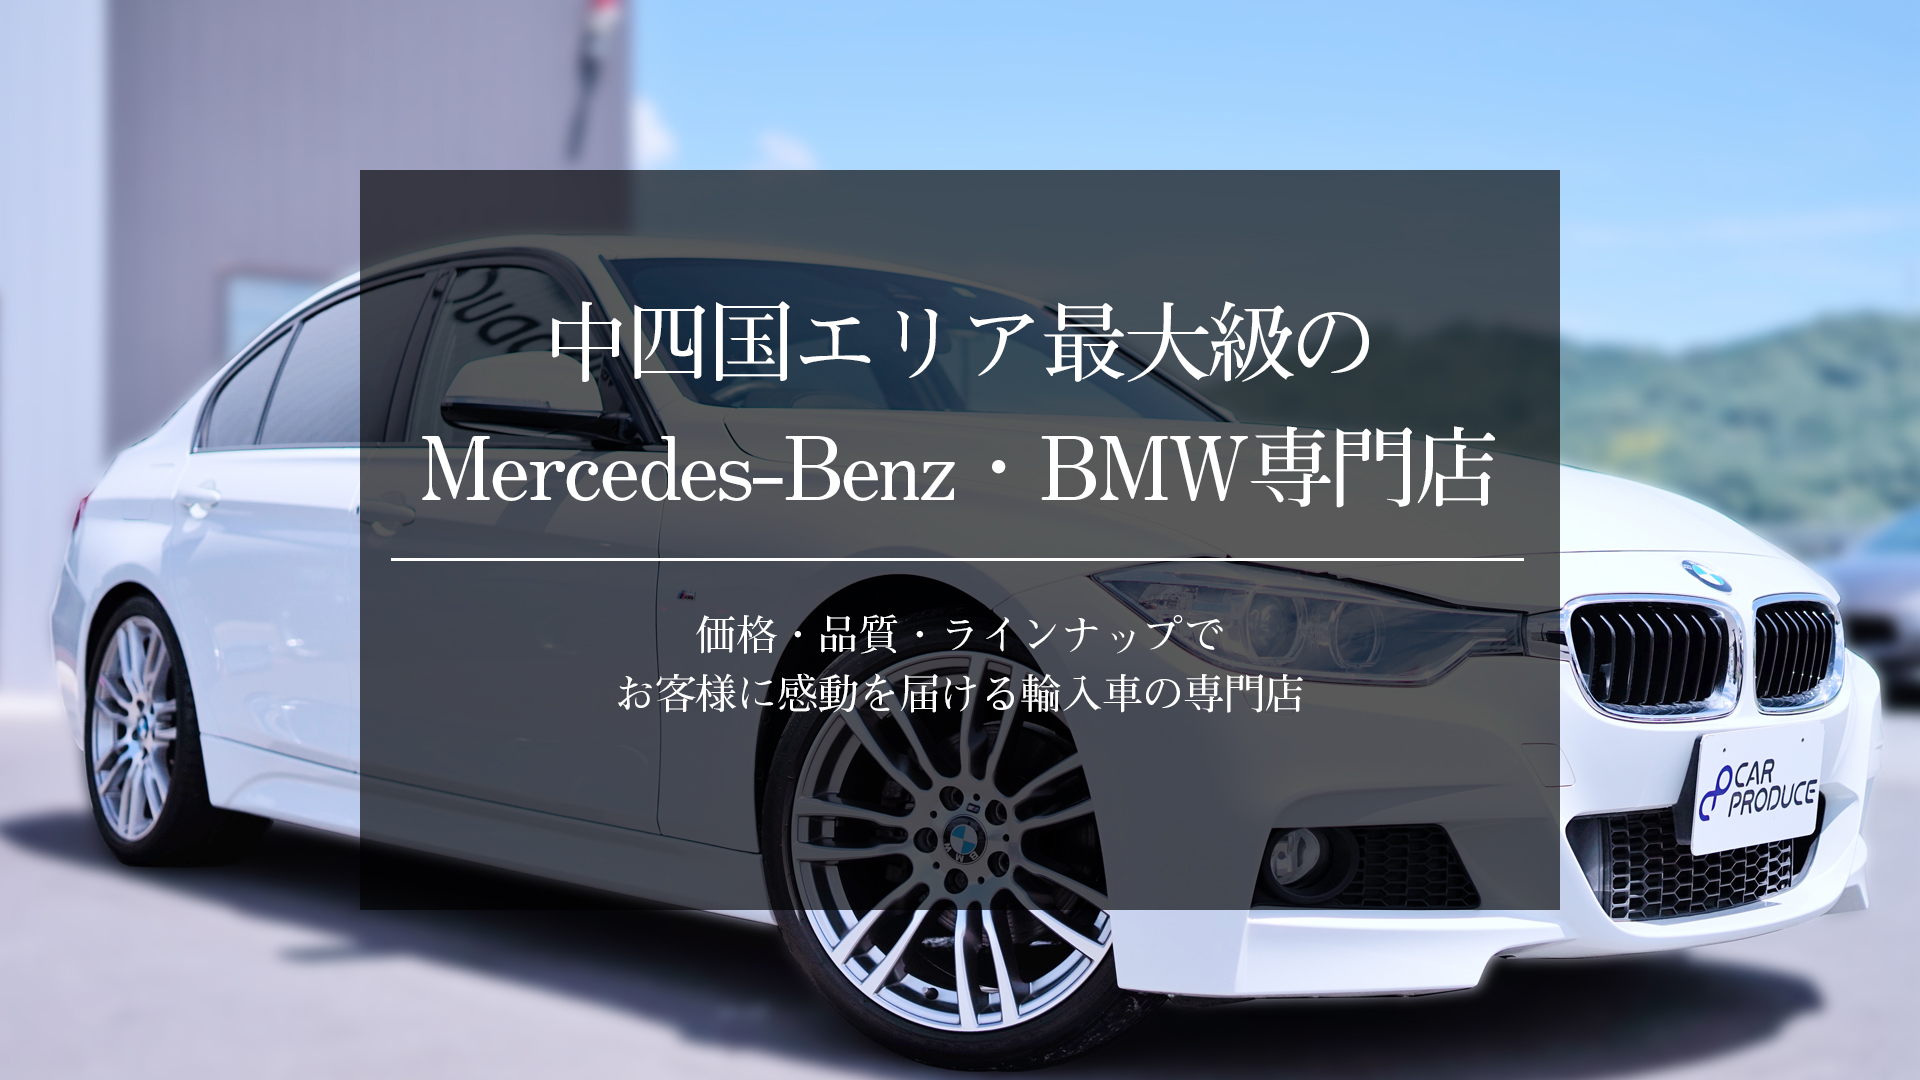 中四国エリア最大級のMercedes-Benz・BMW専門店